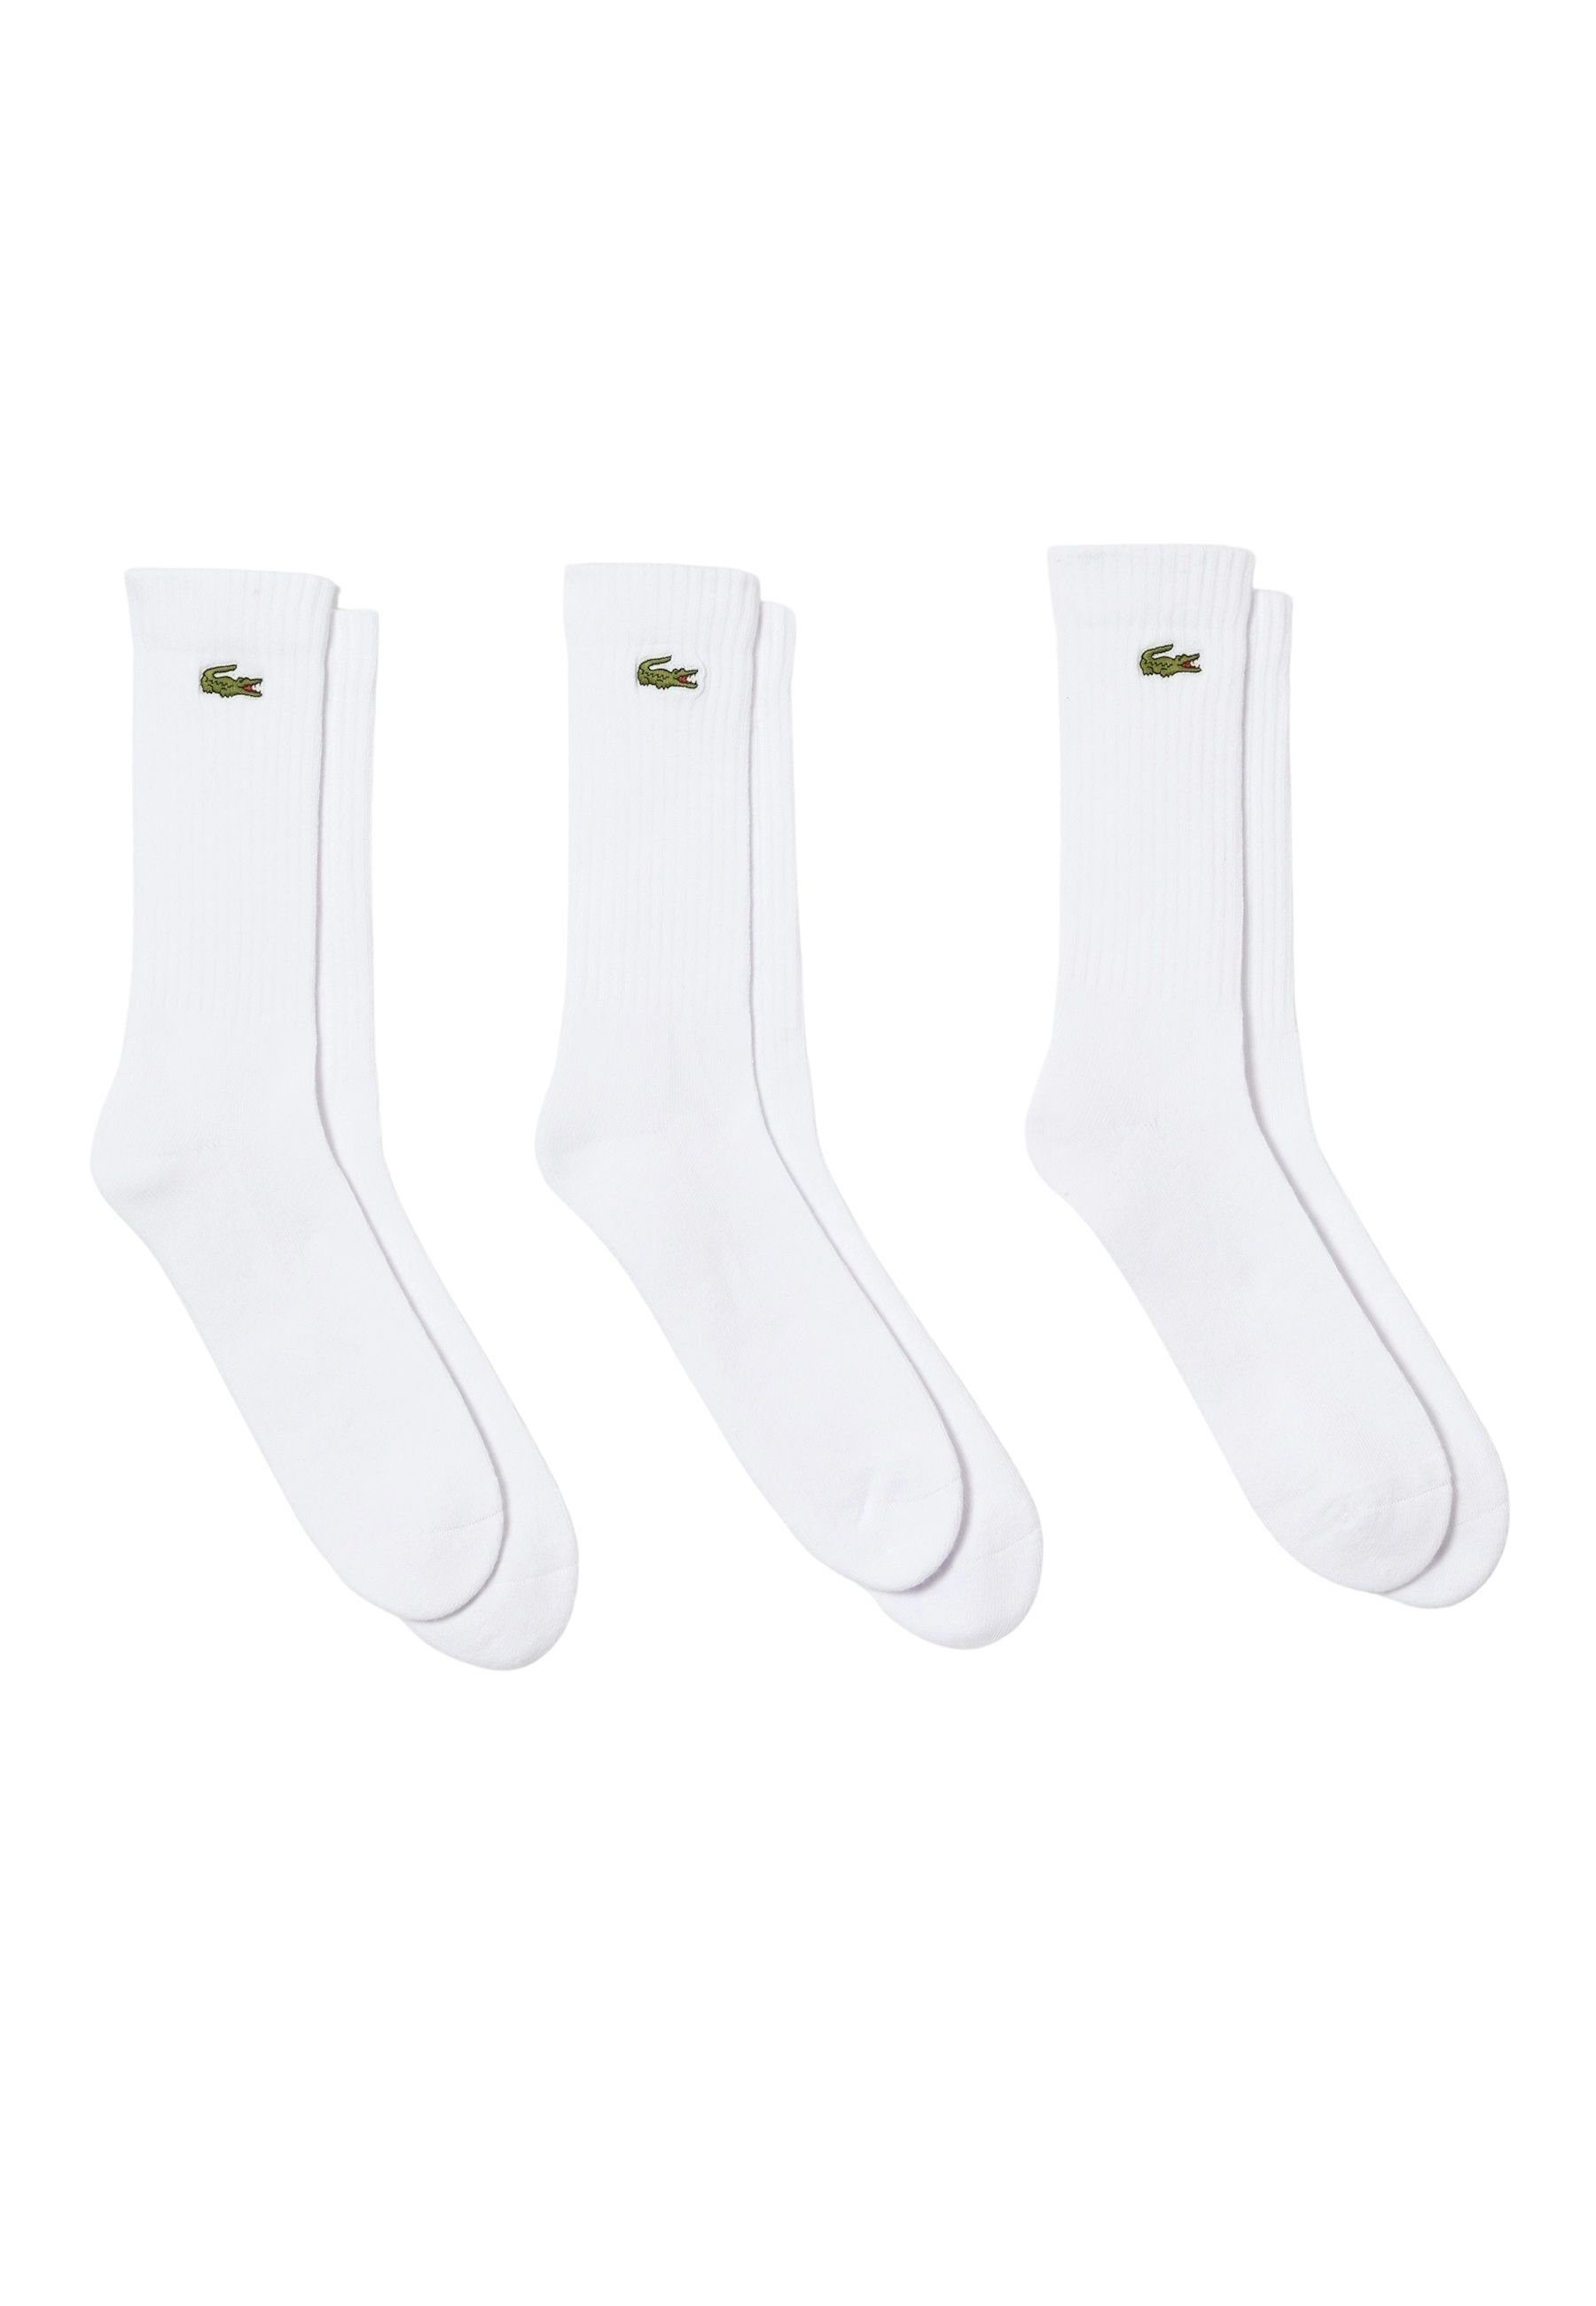 Favorit Lacoste Socken Socken weiß Offer Permanent Socken Dreierpack hohe (3-Paar)